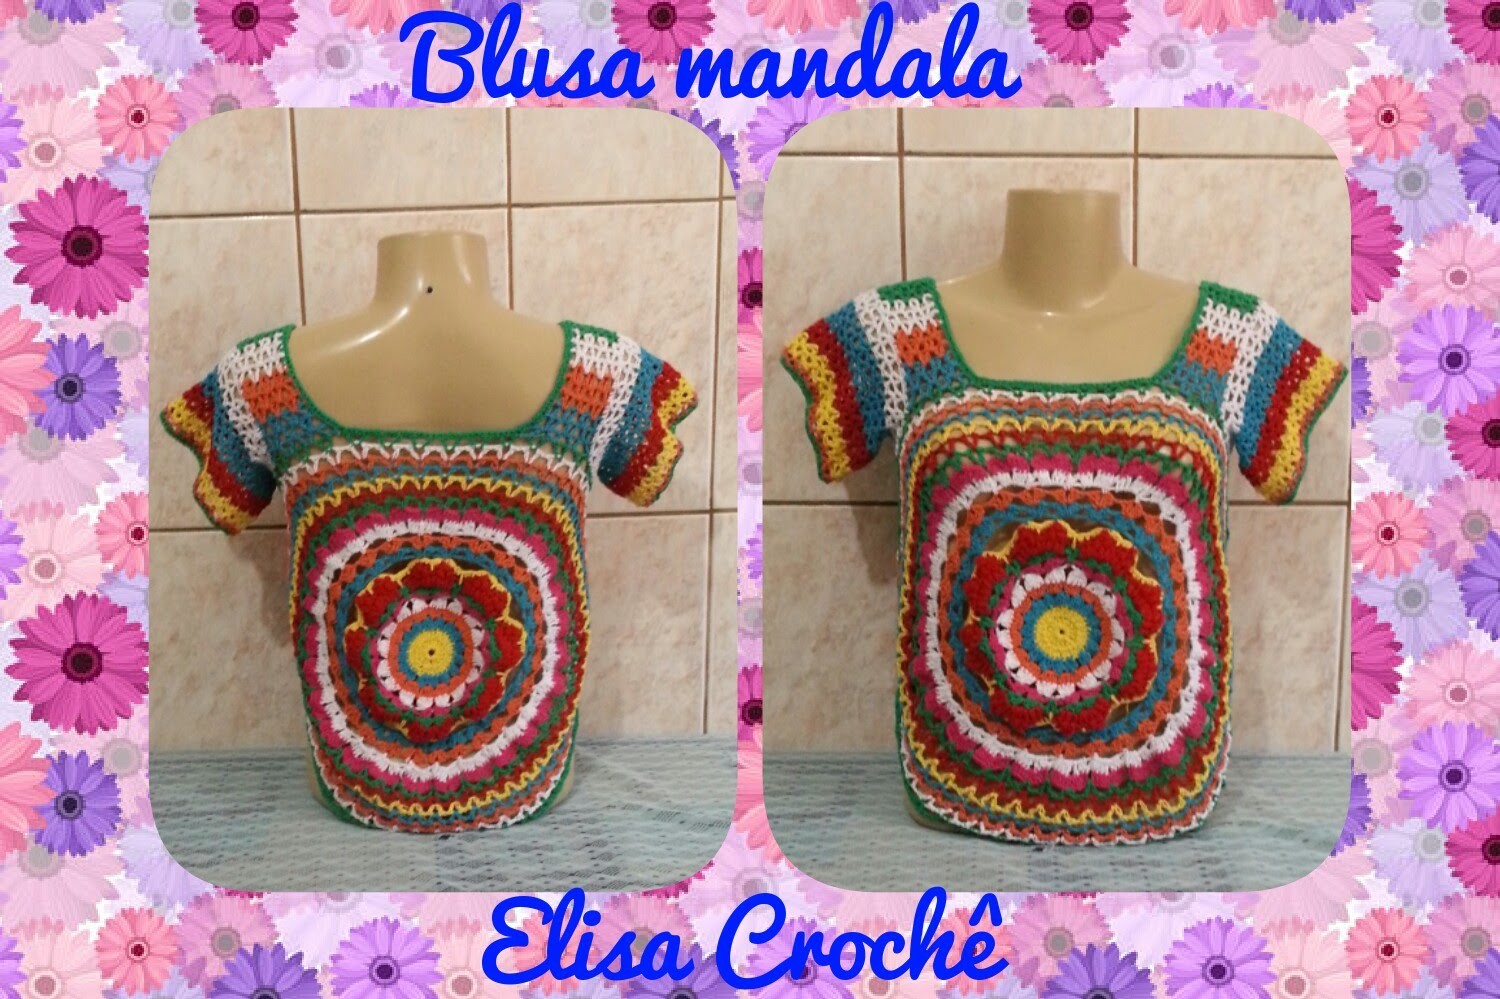 Blusa mandala com sobras de linhas de crochê ( 4ª parte ) # Elisa Crochê